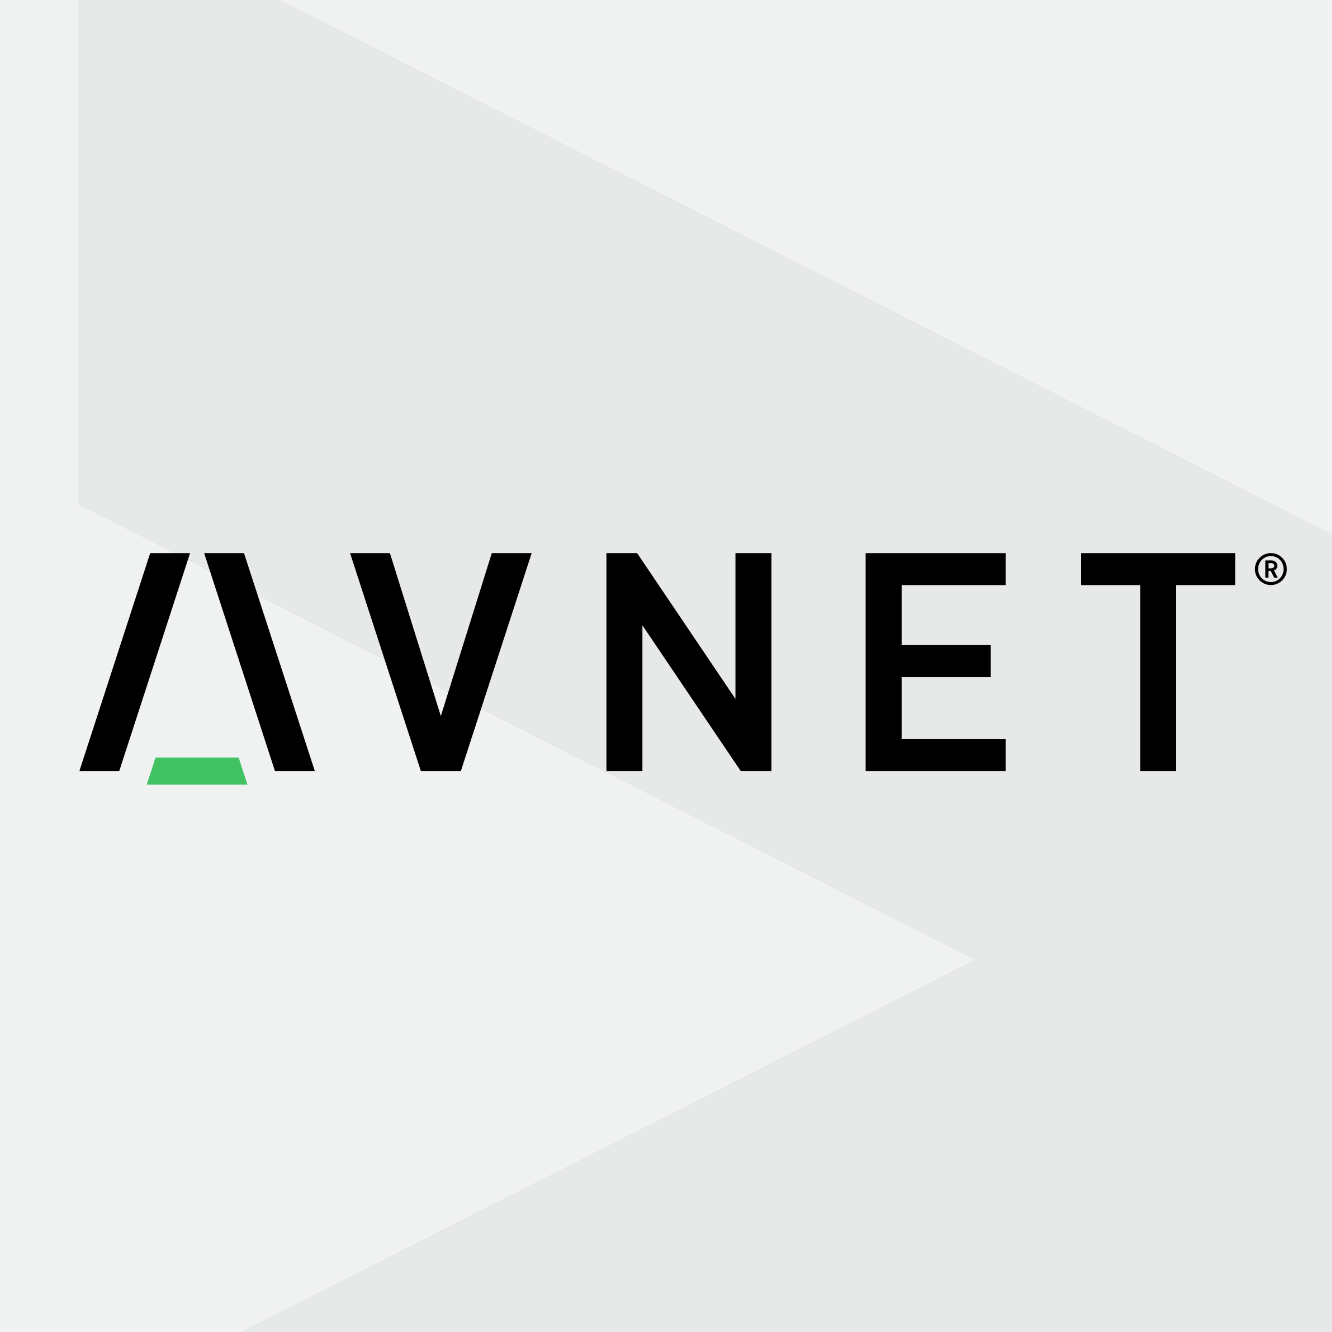 Avnet case study